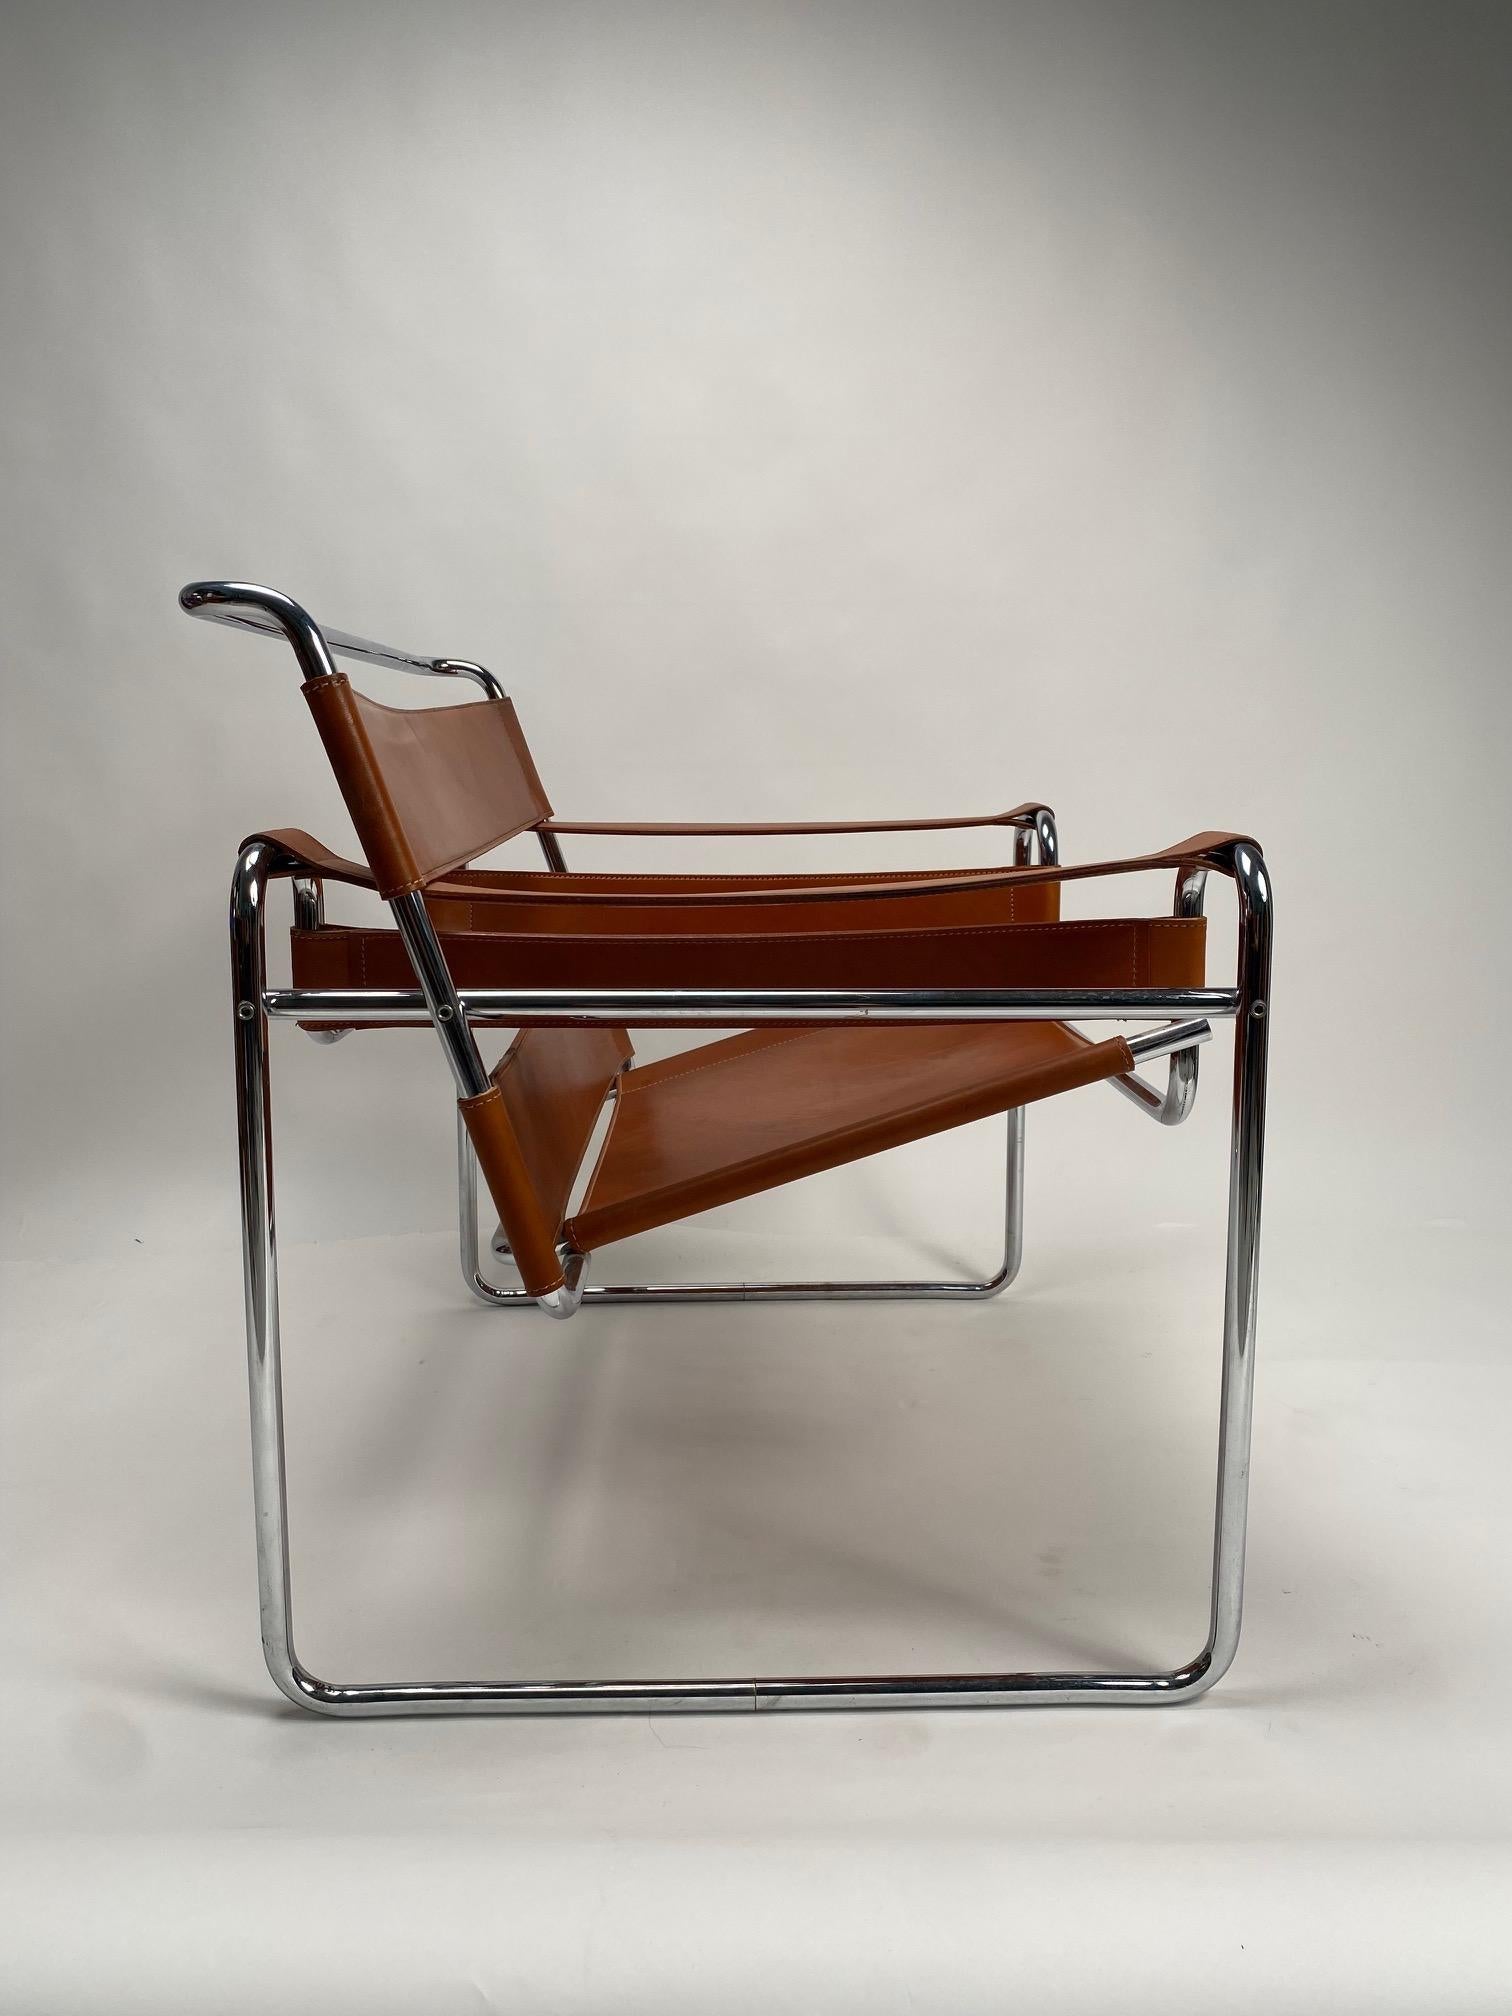 Marcel Breuer, Wassilly Sessel für Gavina, Vintage Original Version, Italien 1970er

Der Wassily-Sessel, einer der kultigsten und raffiniertesten Bauhaus-Sessel, entworfen von Marcel Breuer in den Jahren 1925-1926, auch bekannt als 